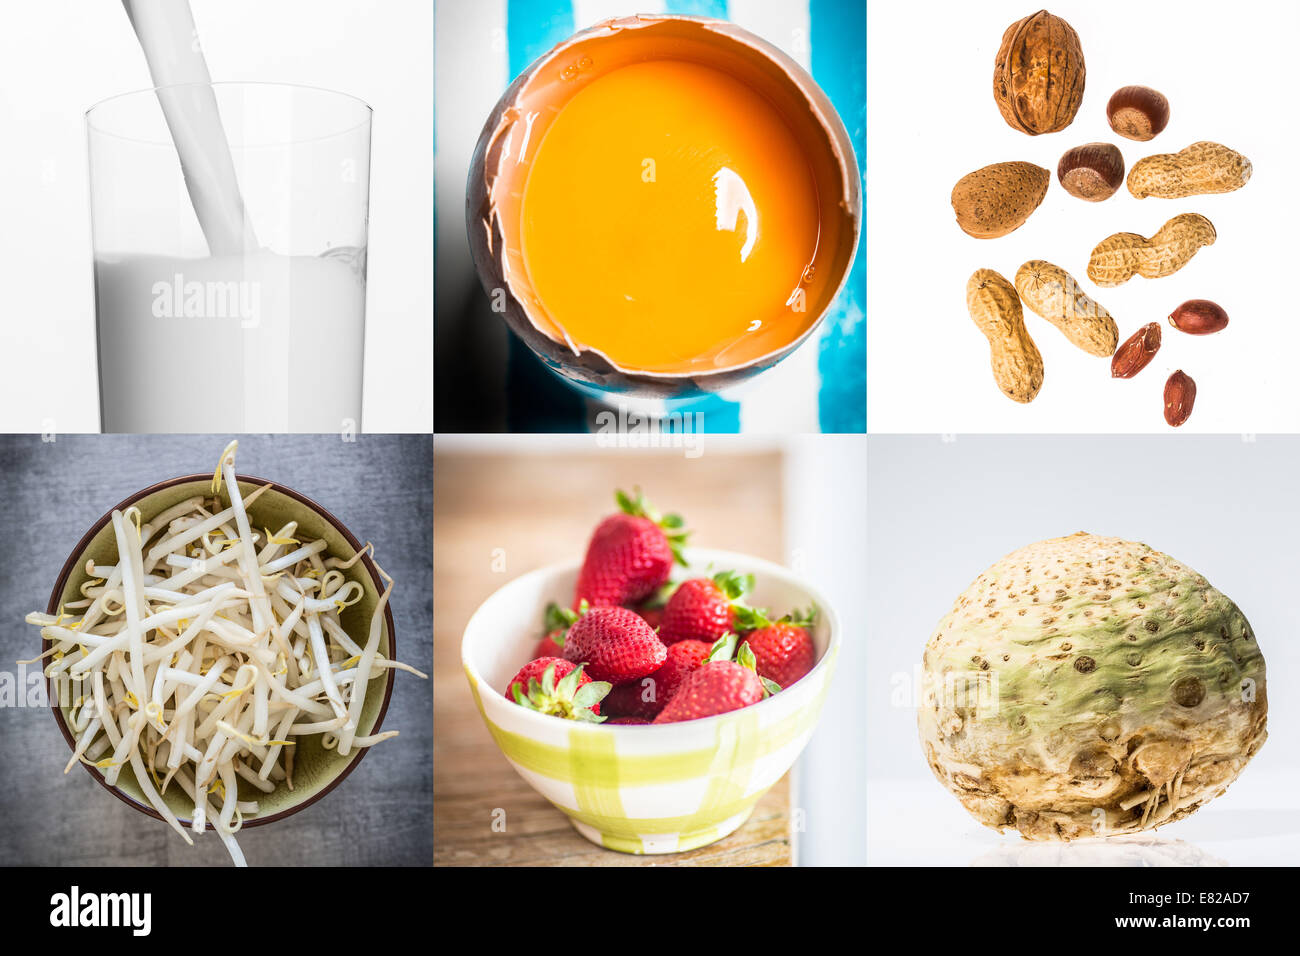 Diferentes productos alimenticios alergénicos. Foto de stock